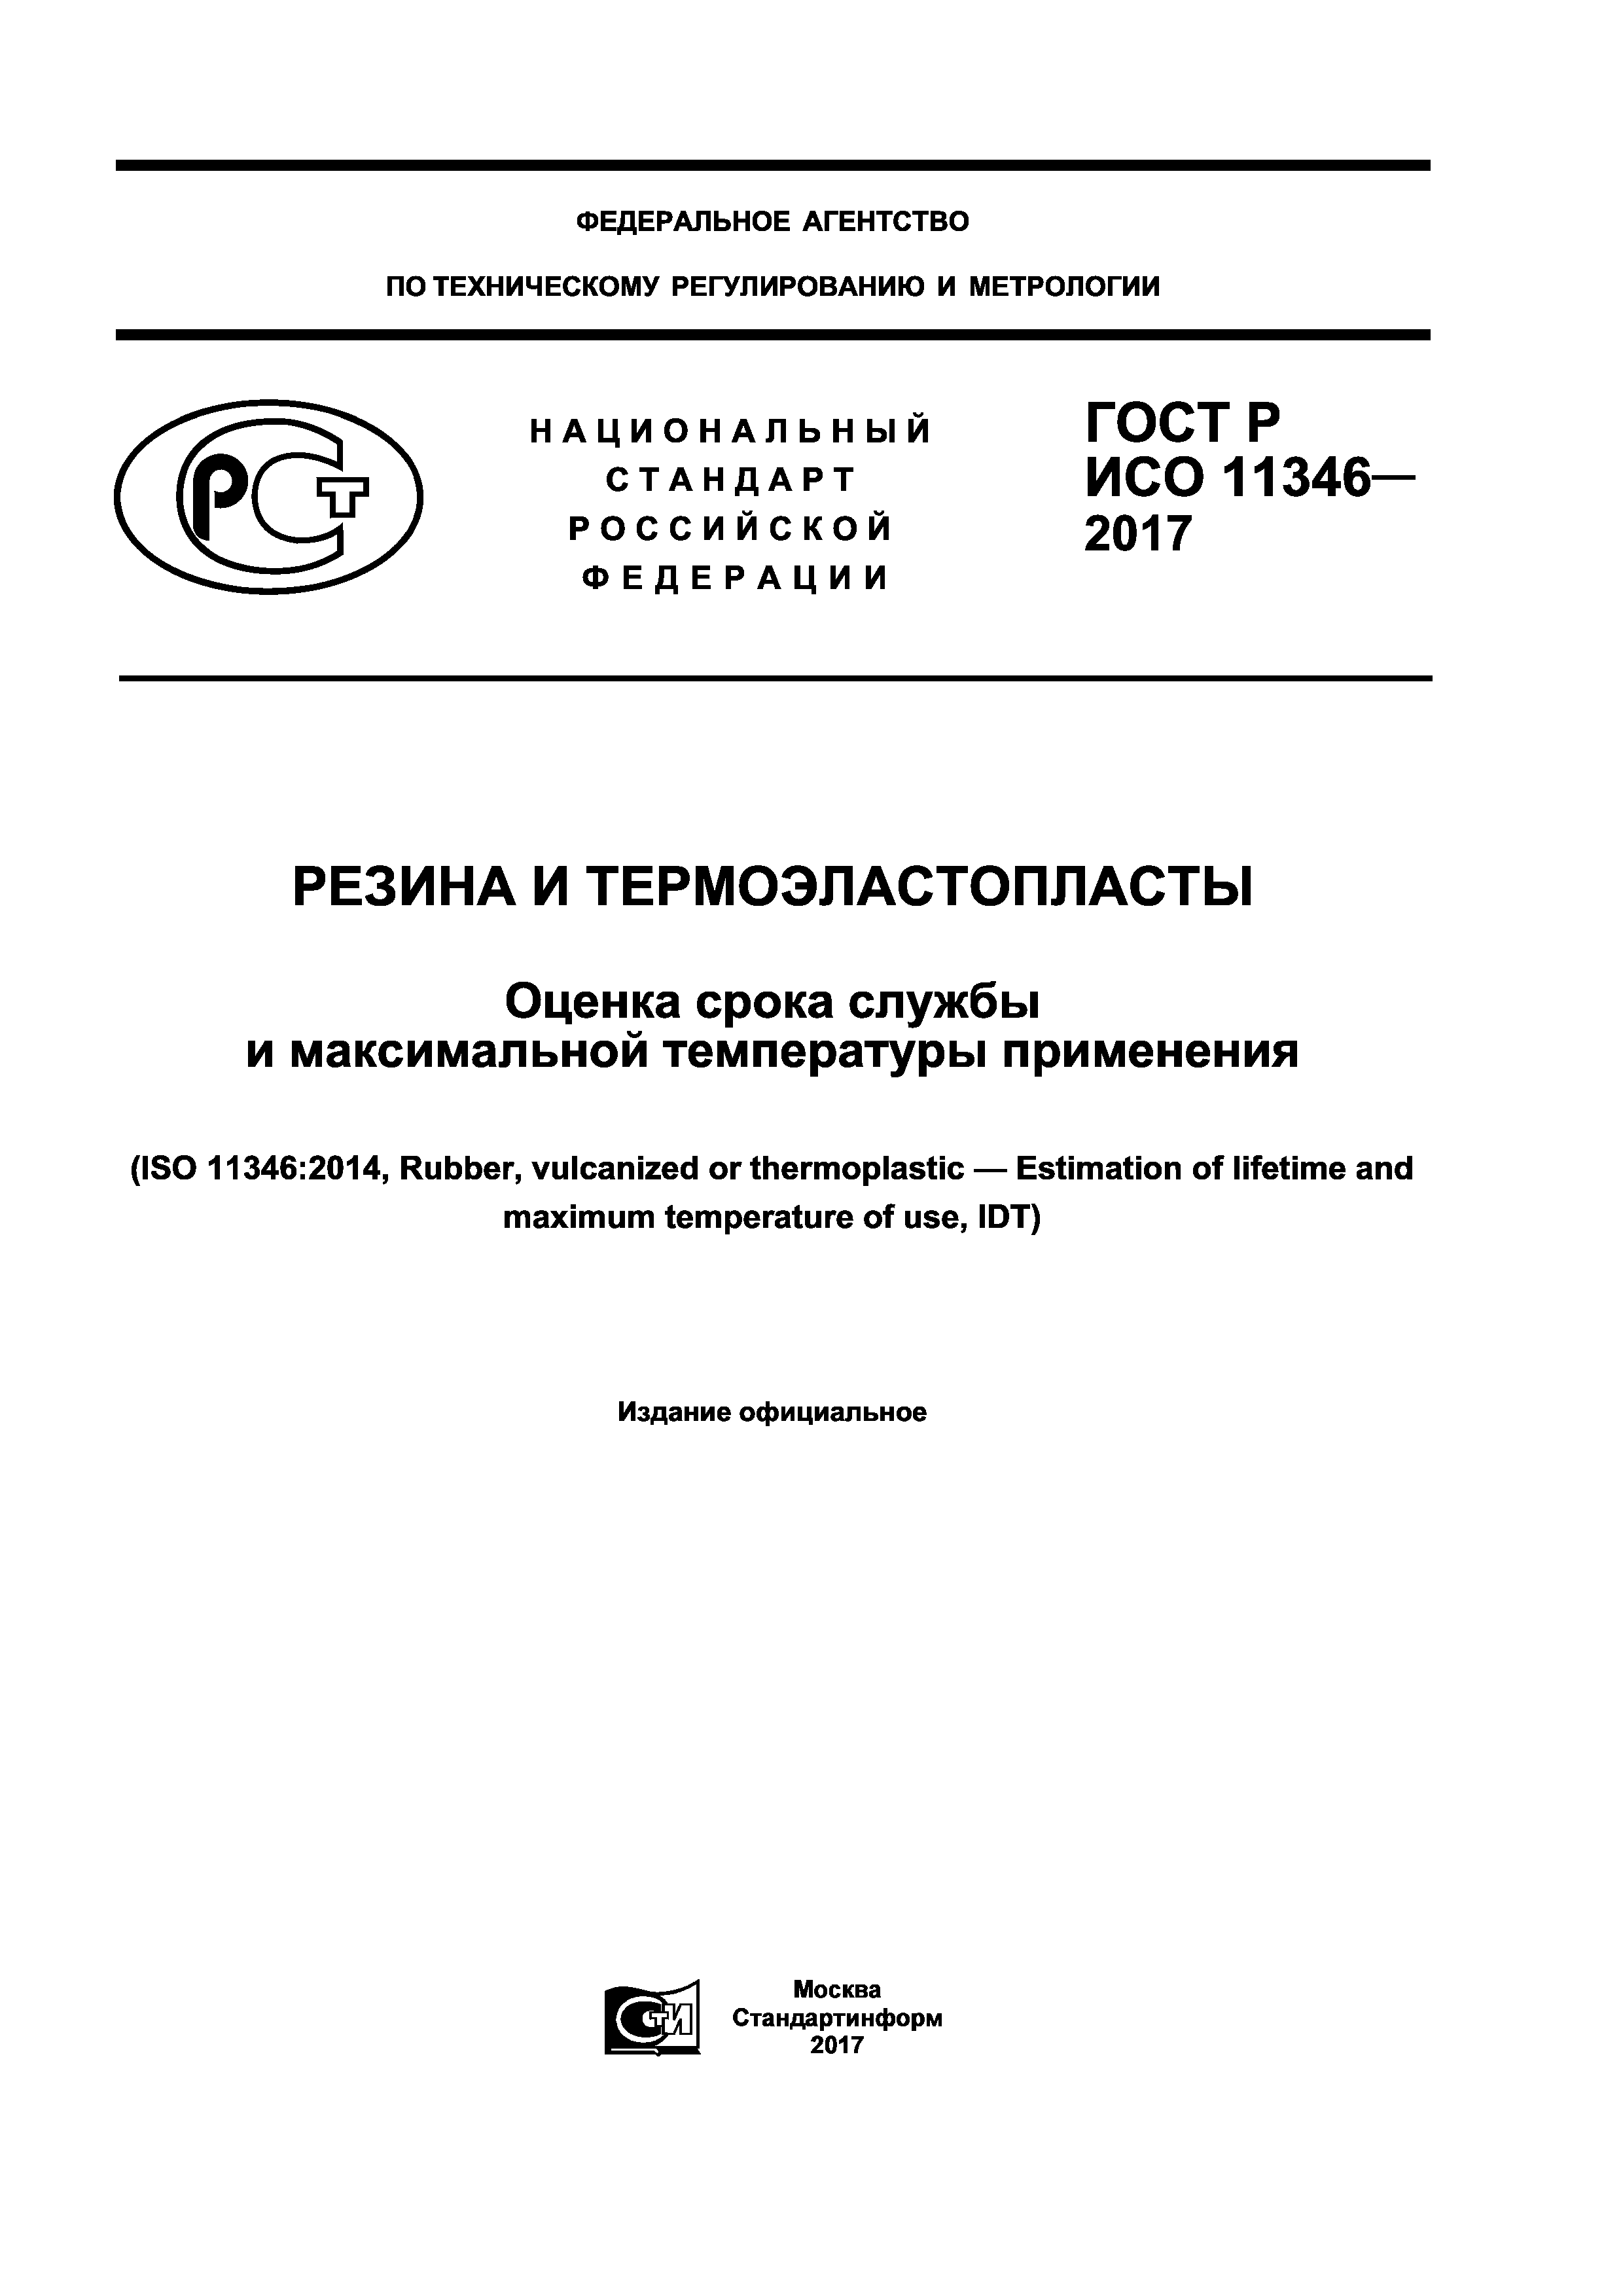 ГОСТ Р ИСО 11346-2017